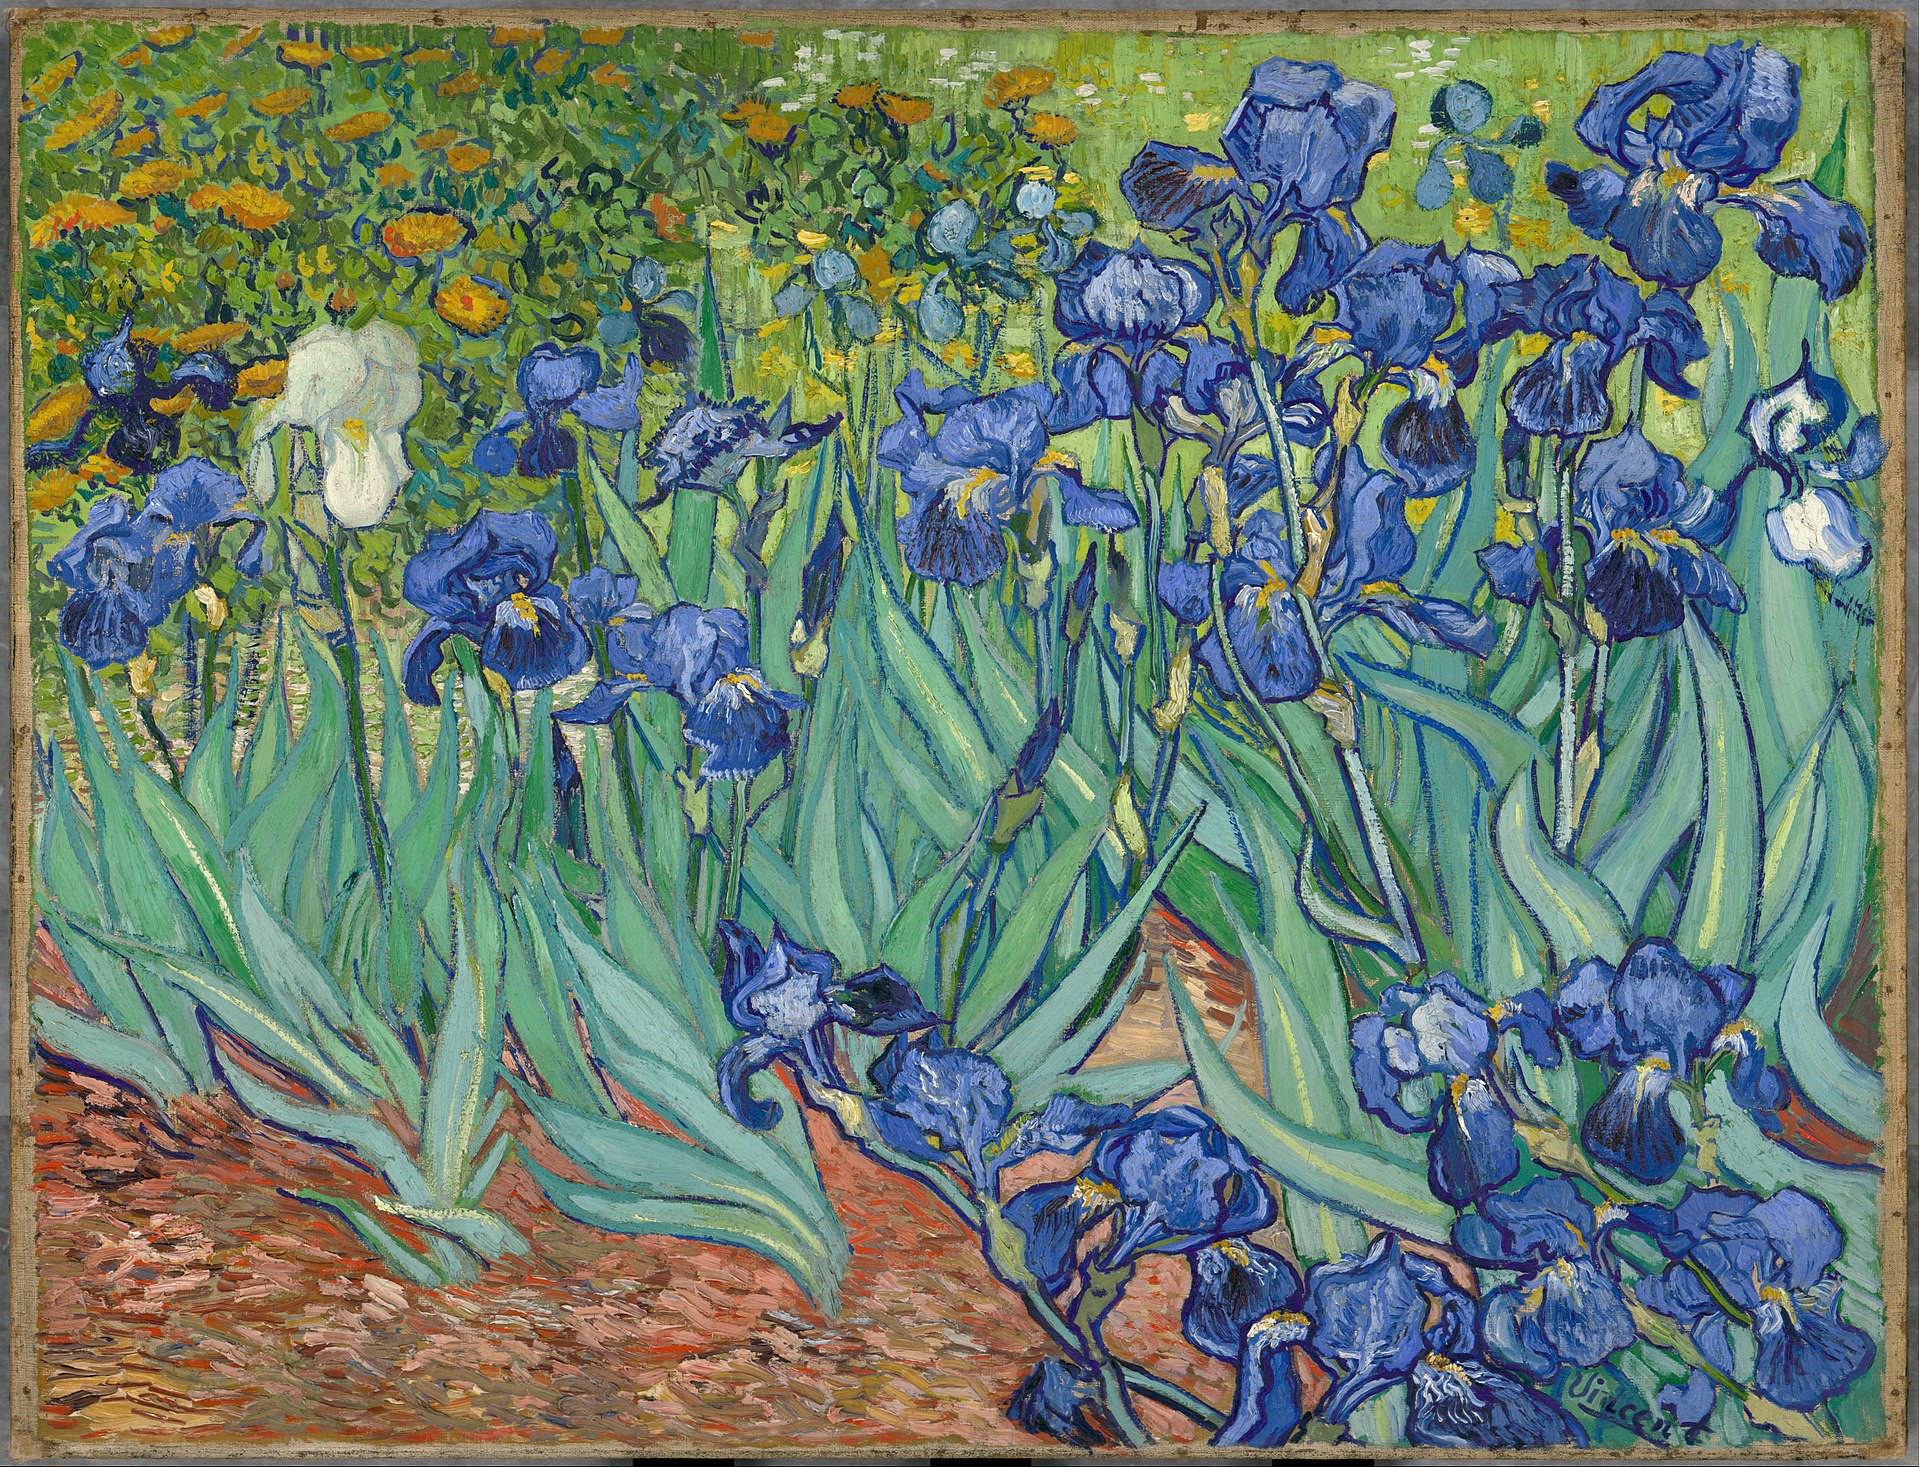 Họa sĩ đại tài Van Gogh là một trong những nghệ sĩ vĩ đại nhất của thế kỷ